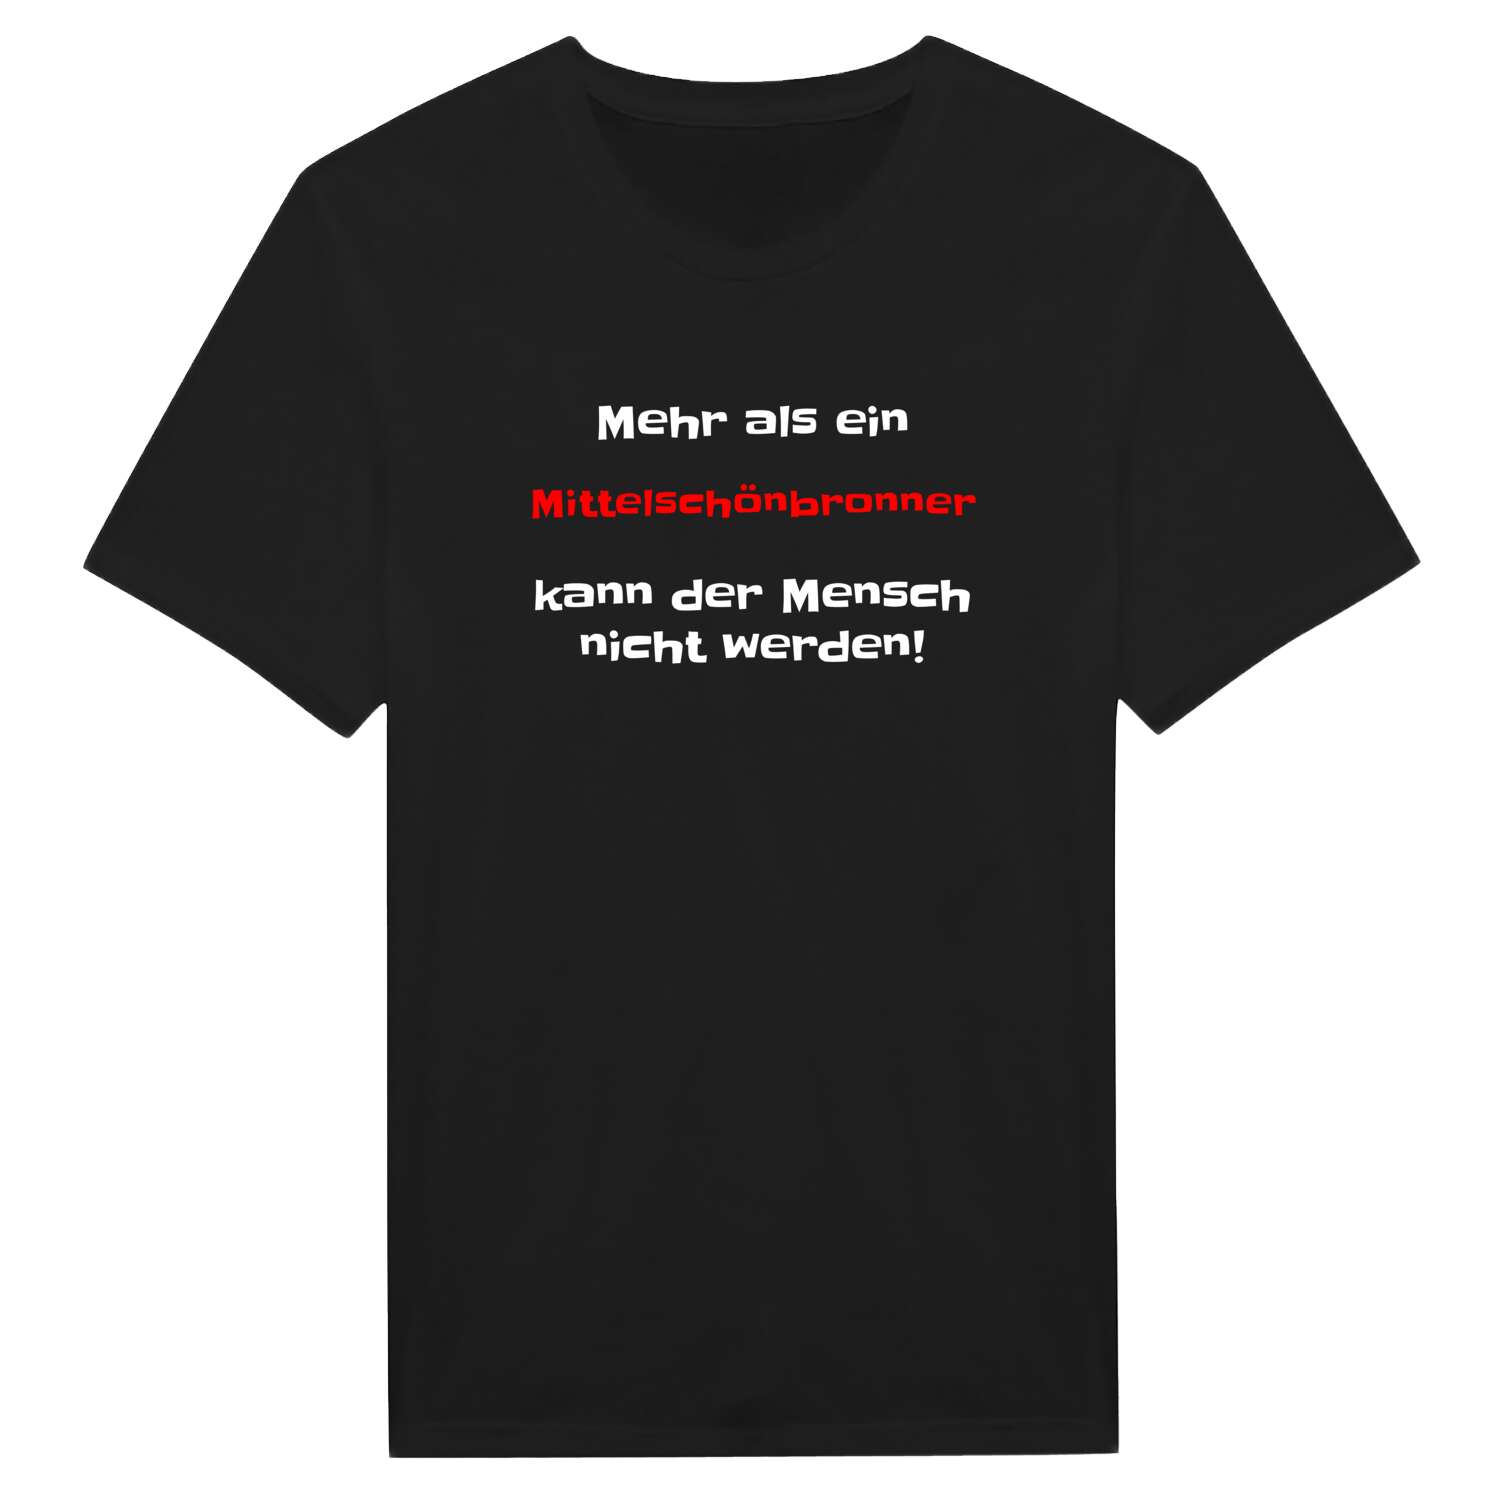 Mittelschönbronn T-Shirt »Mehr als ein«